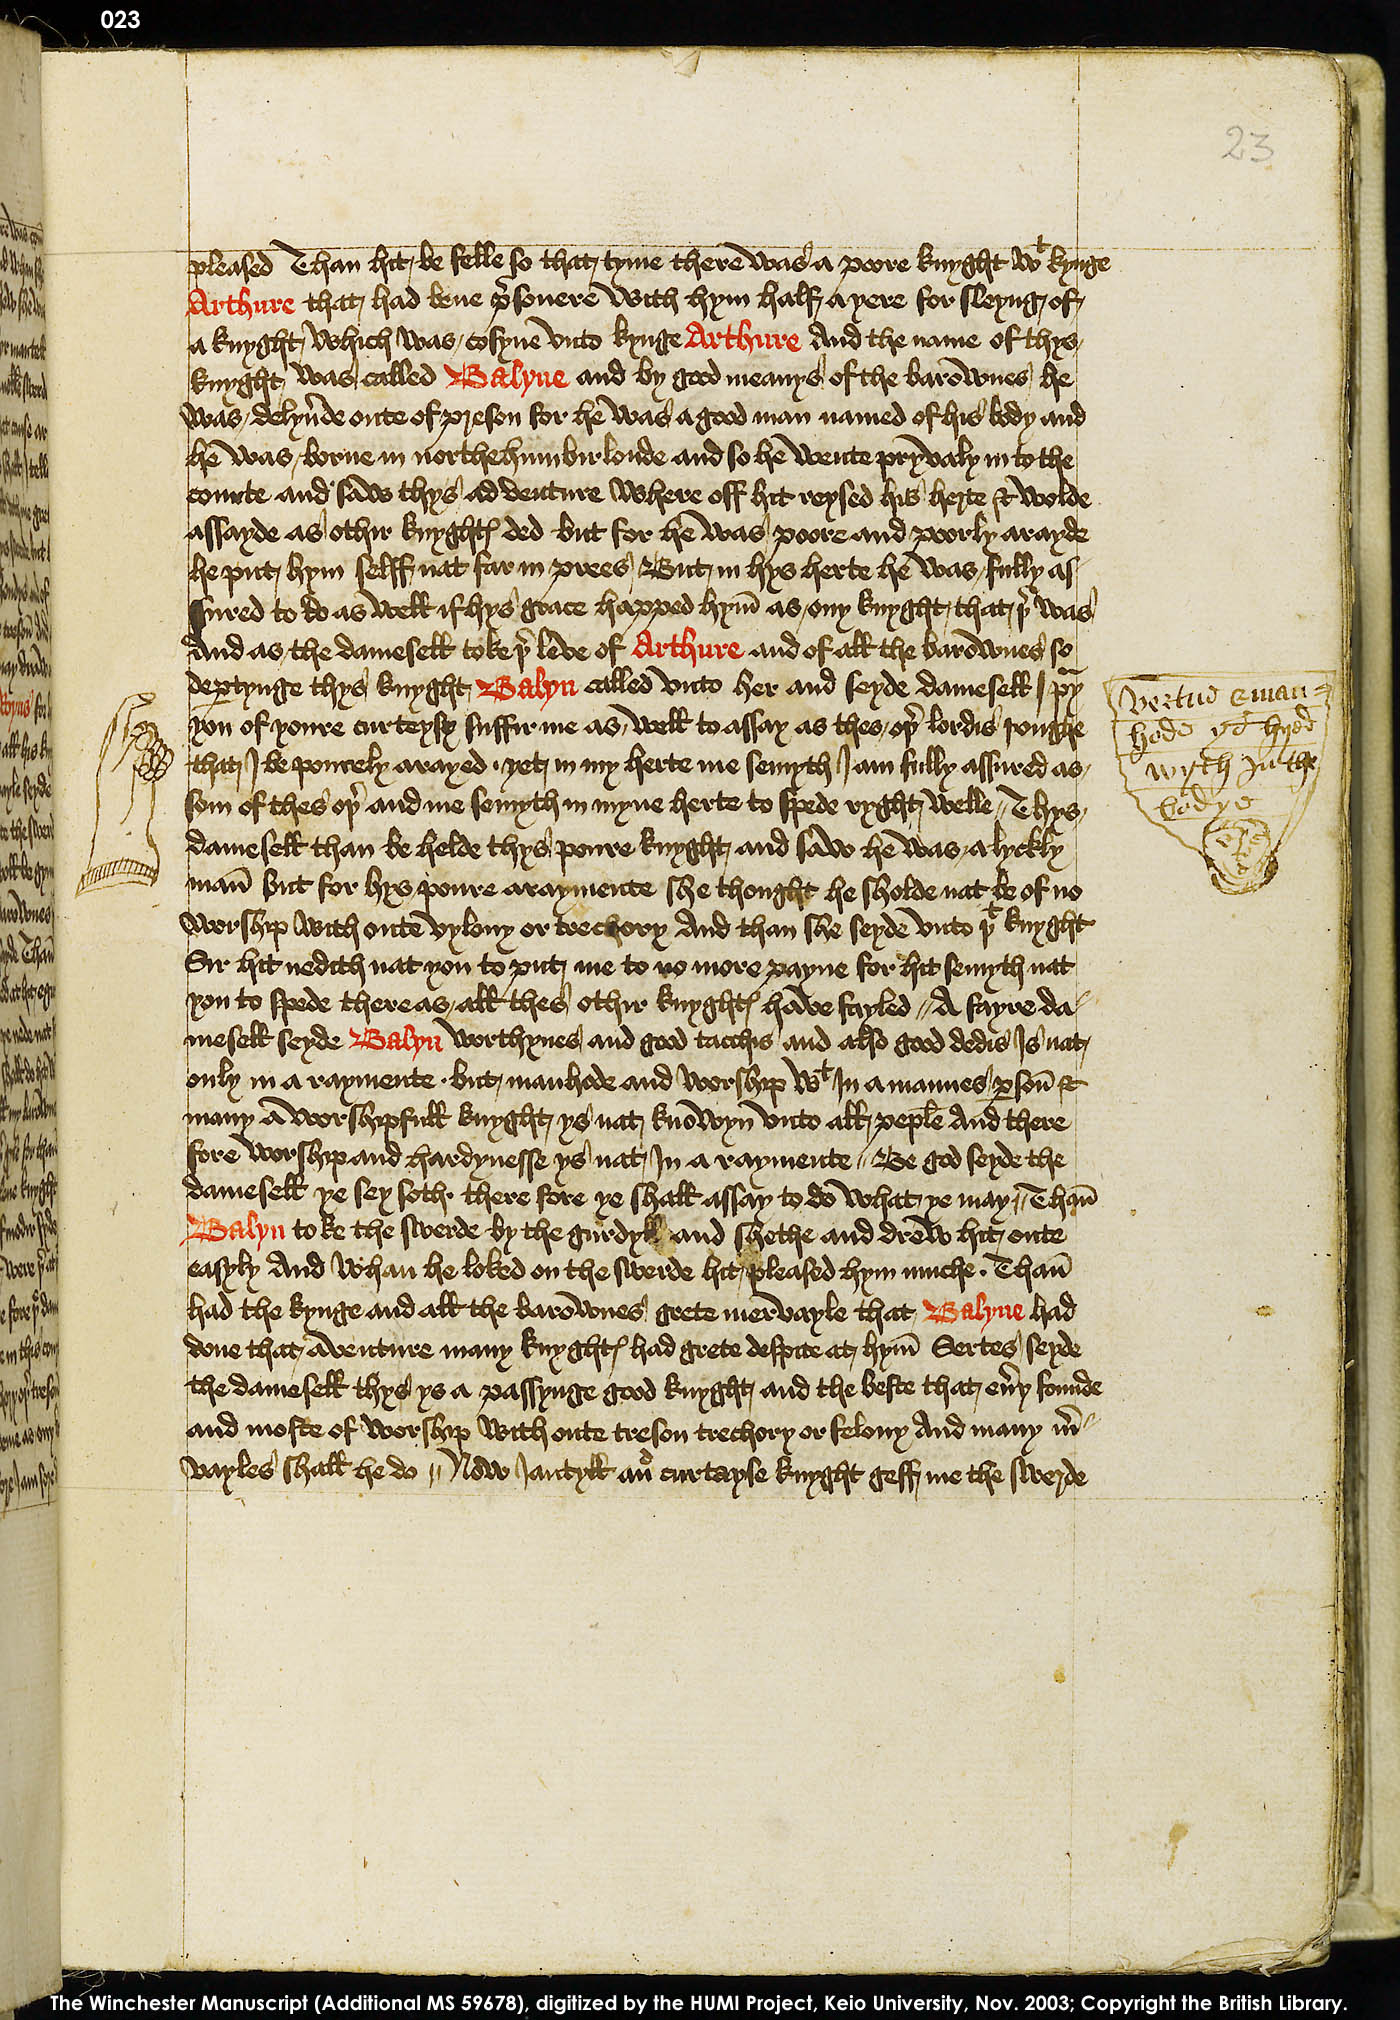 Folio 23r